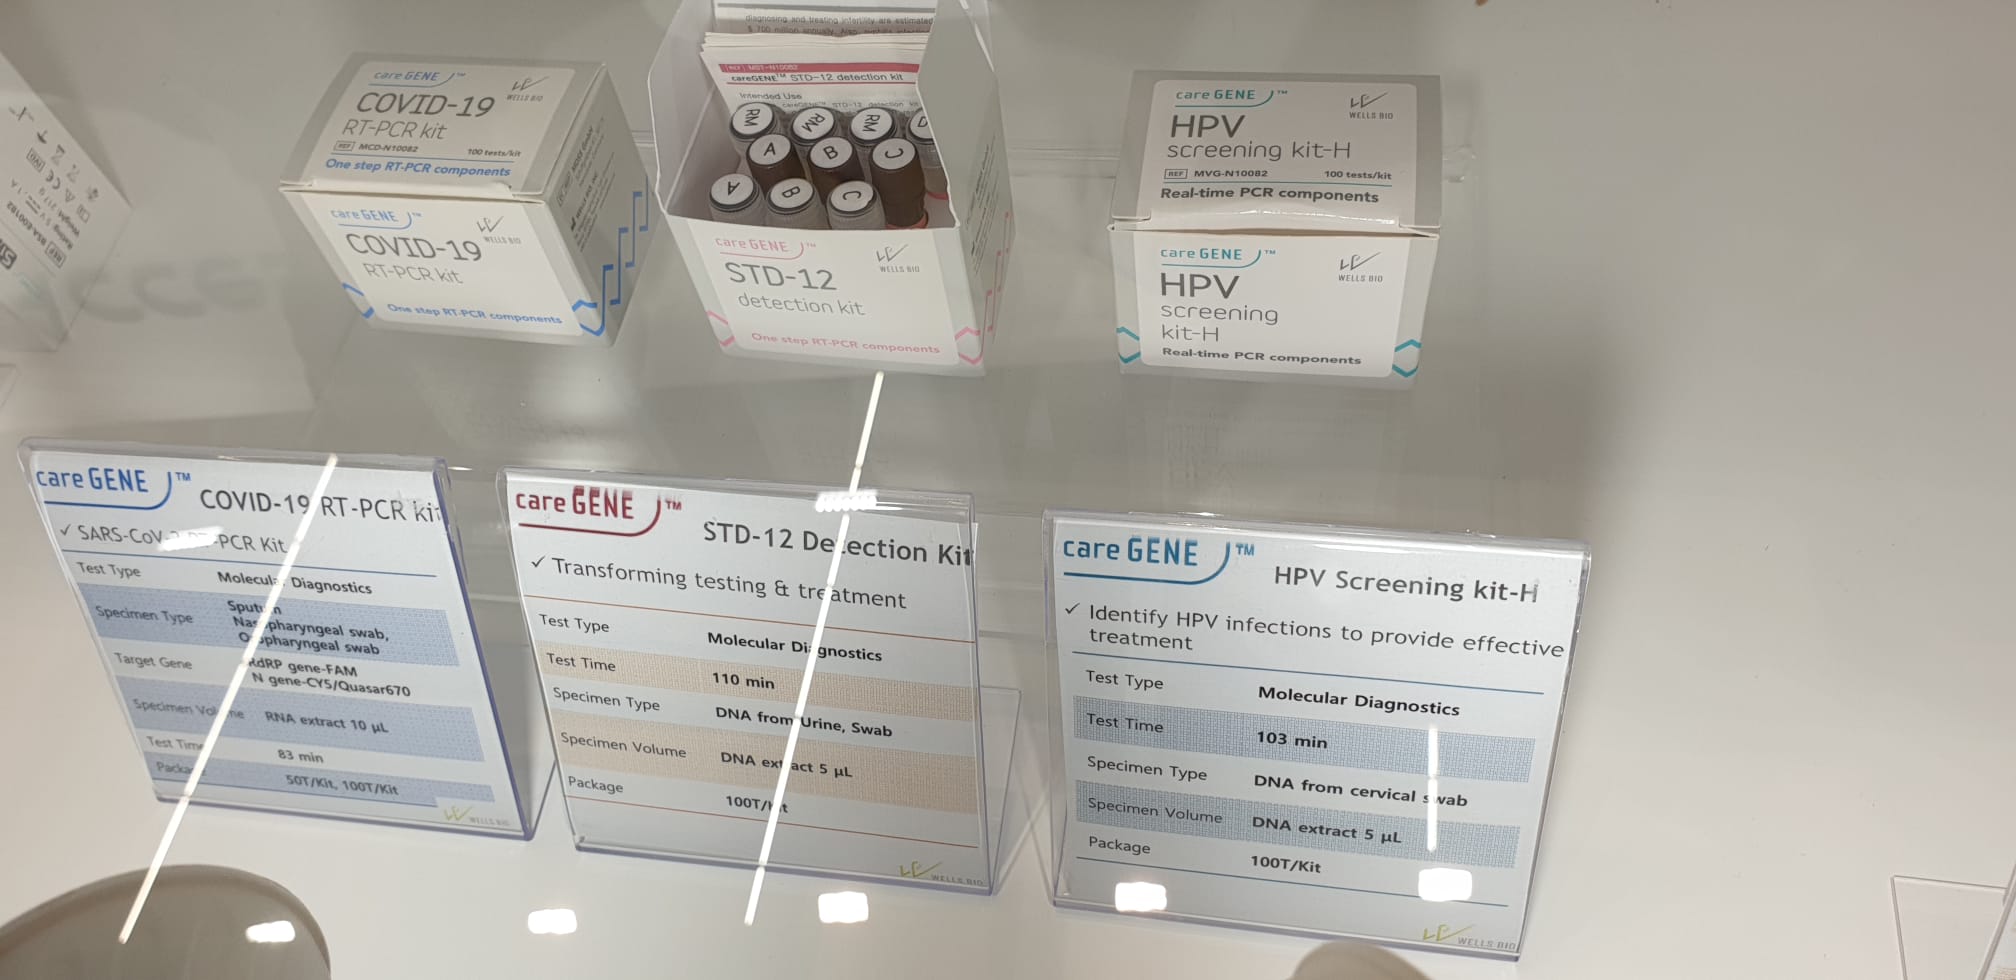 HPV Screening Kit-H